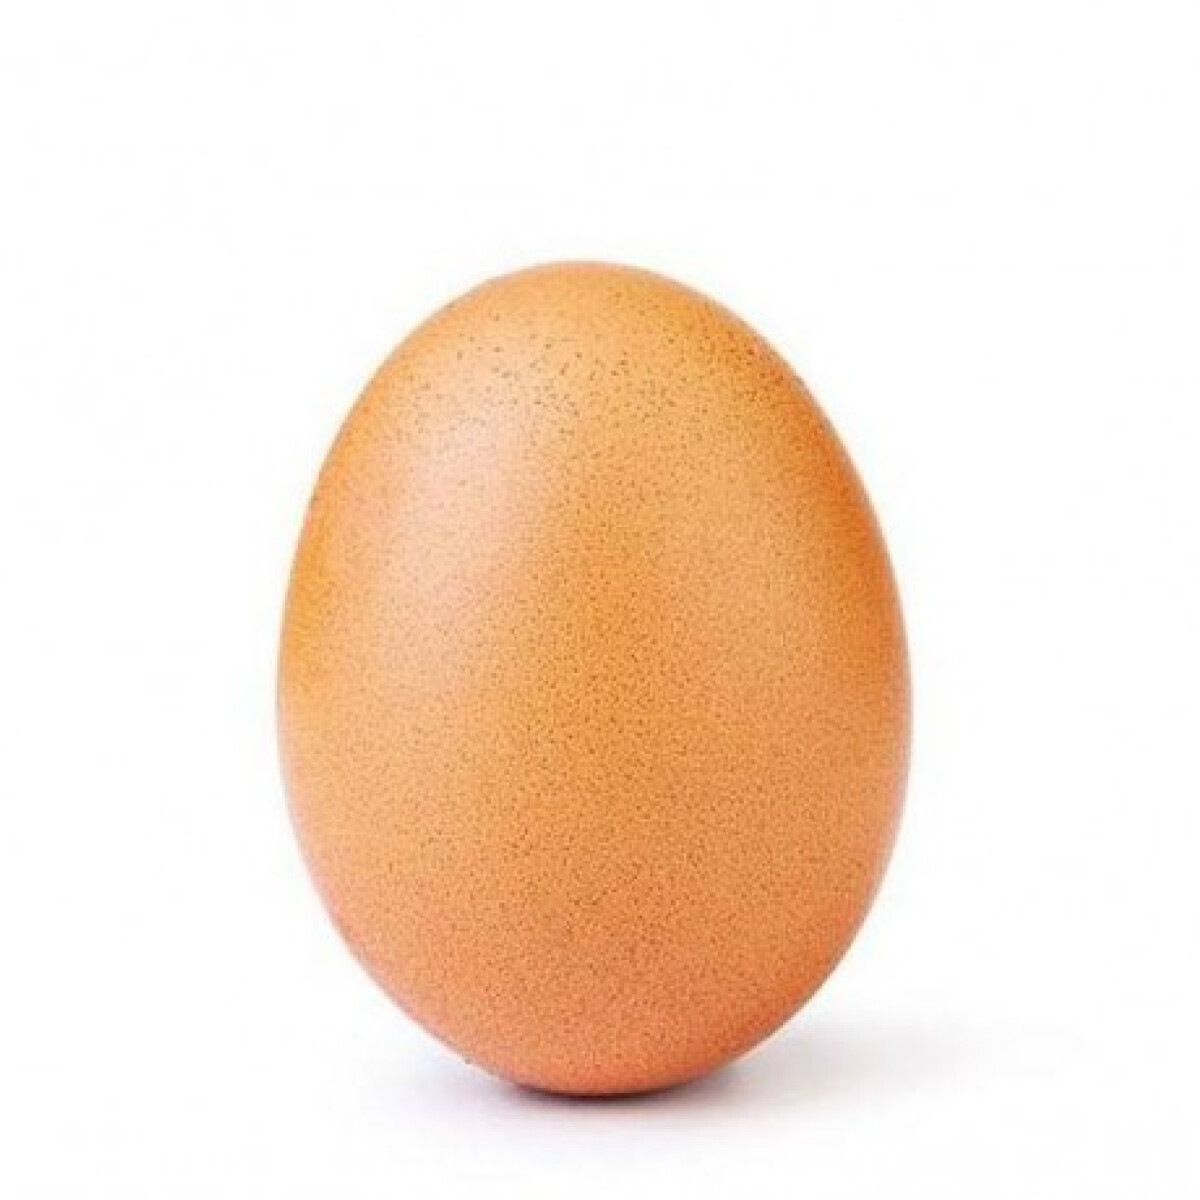 Itt a világ leghíresebb tojása, ami egy pillanat alatt letaszította a trónról Kylie Jenner babafotóját